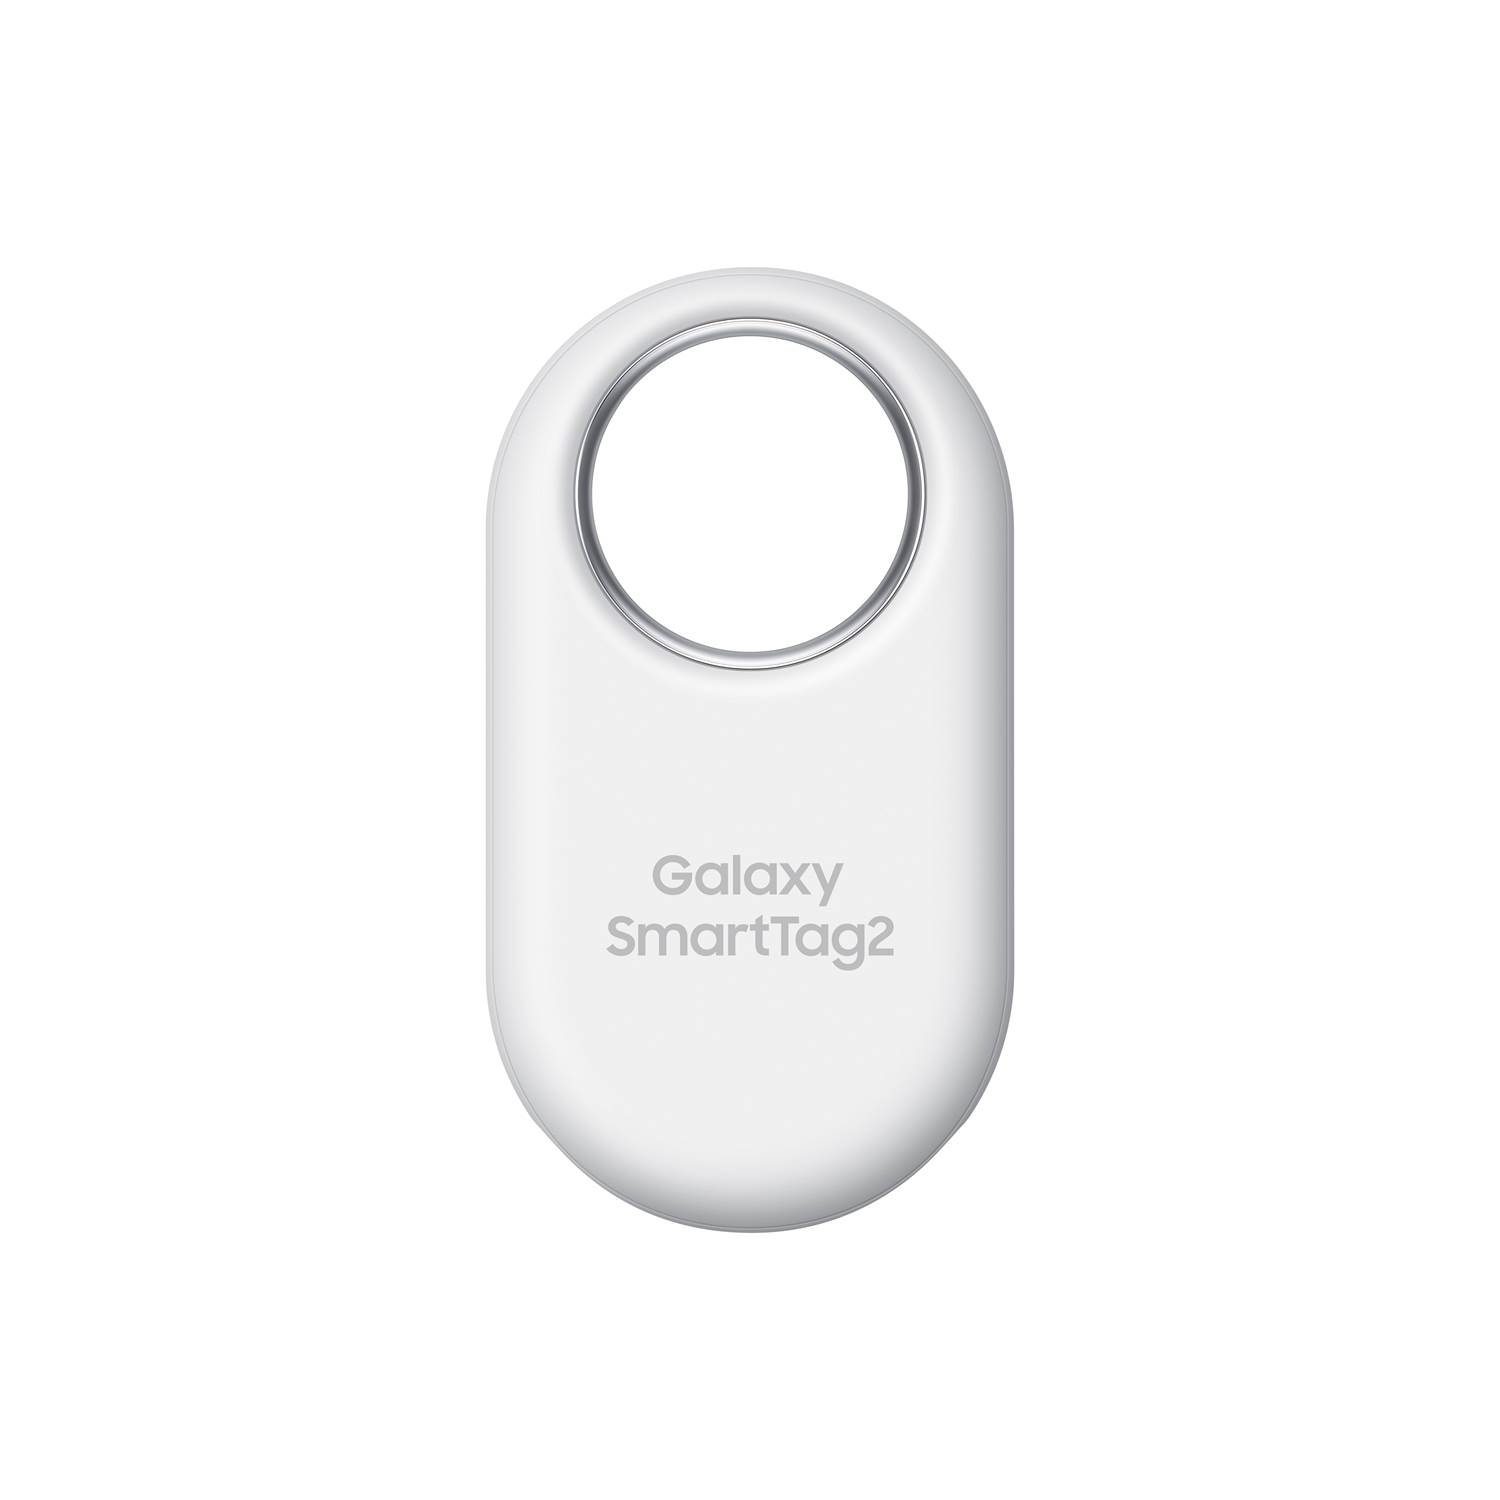 Samsung Smarttag 2 White